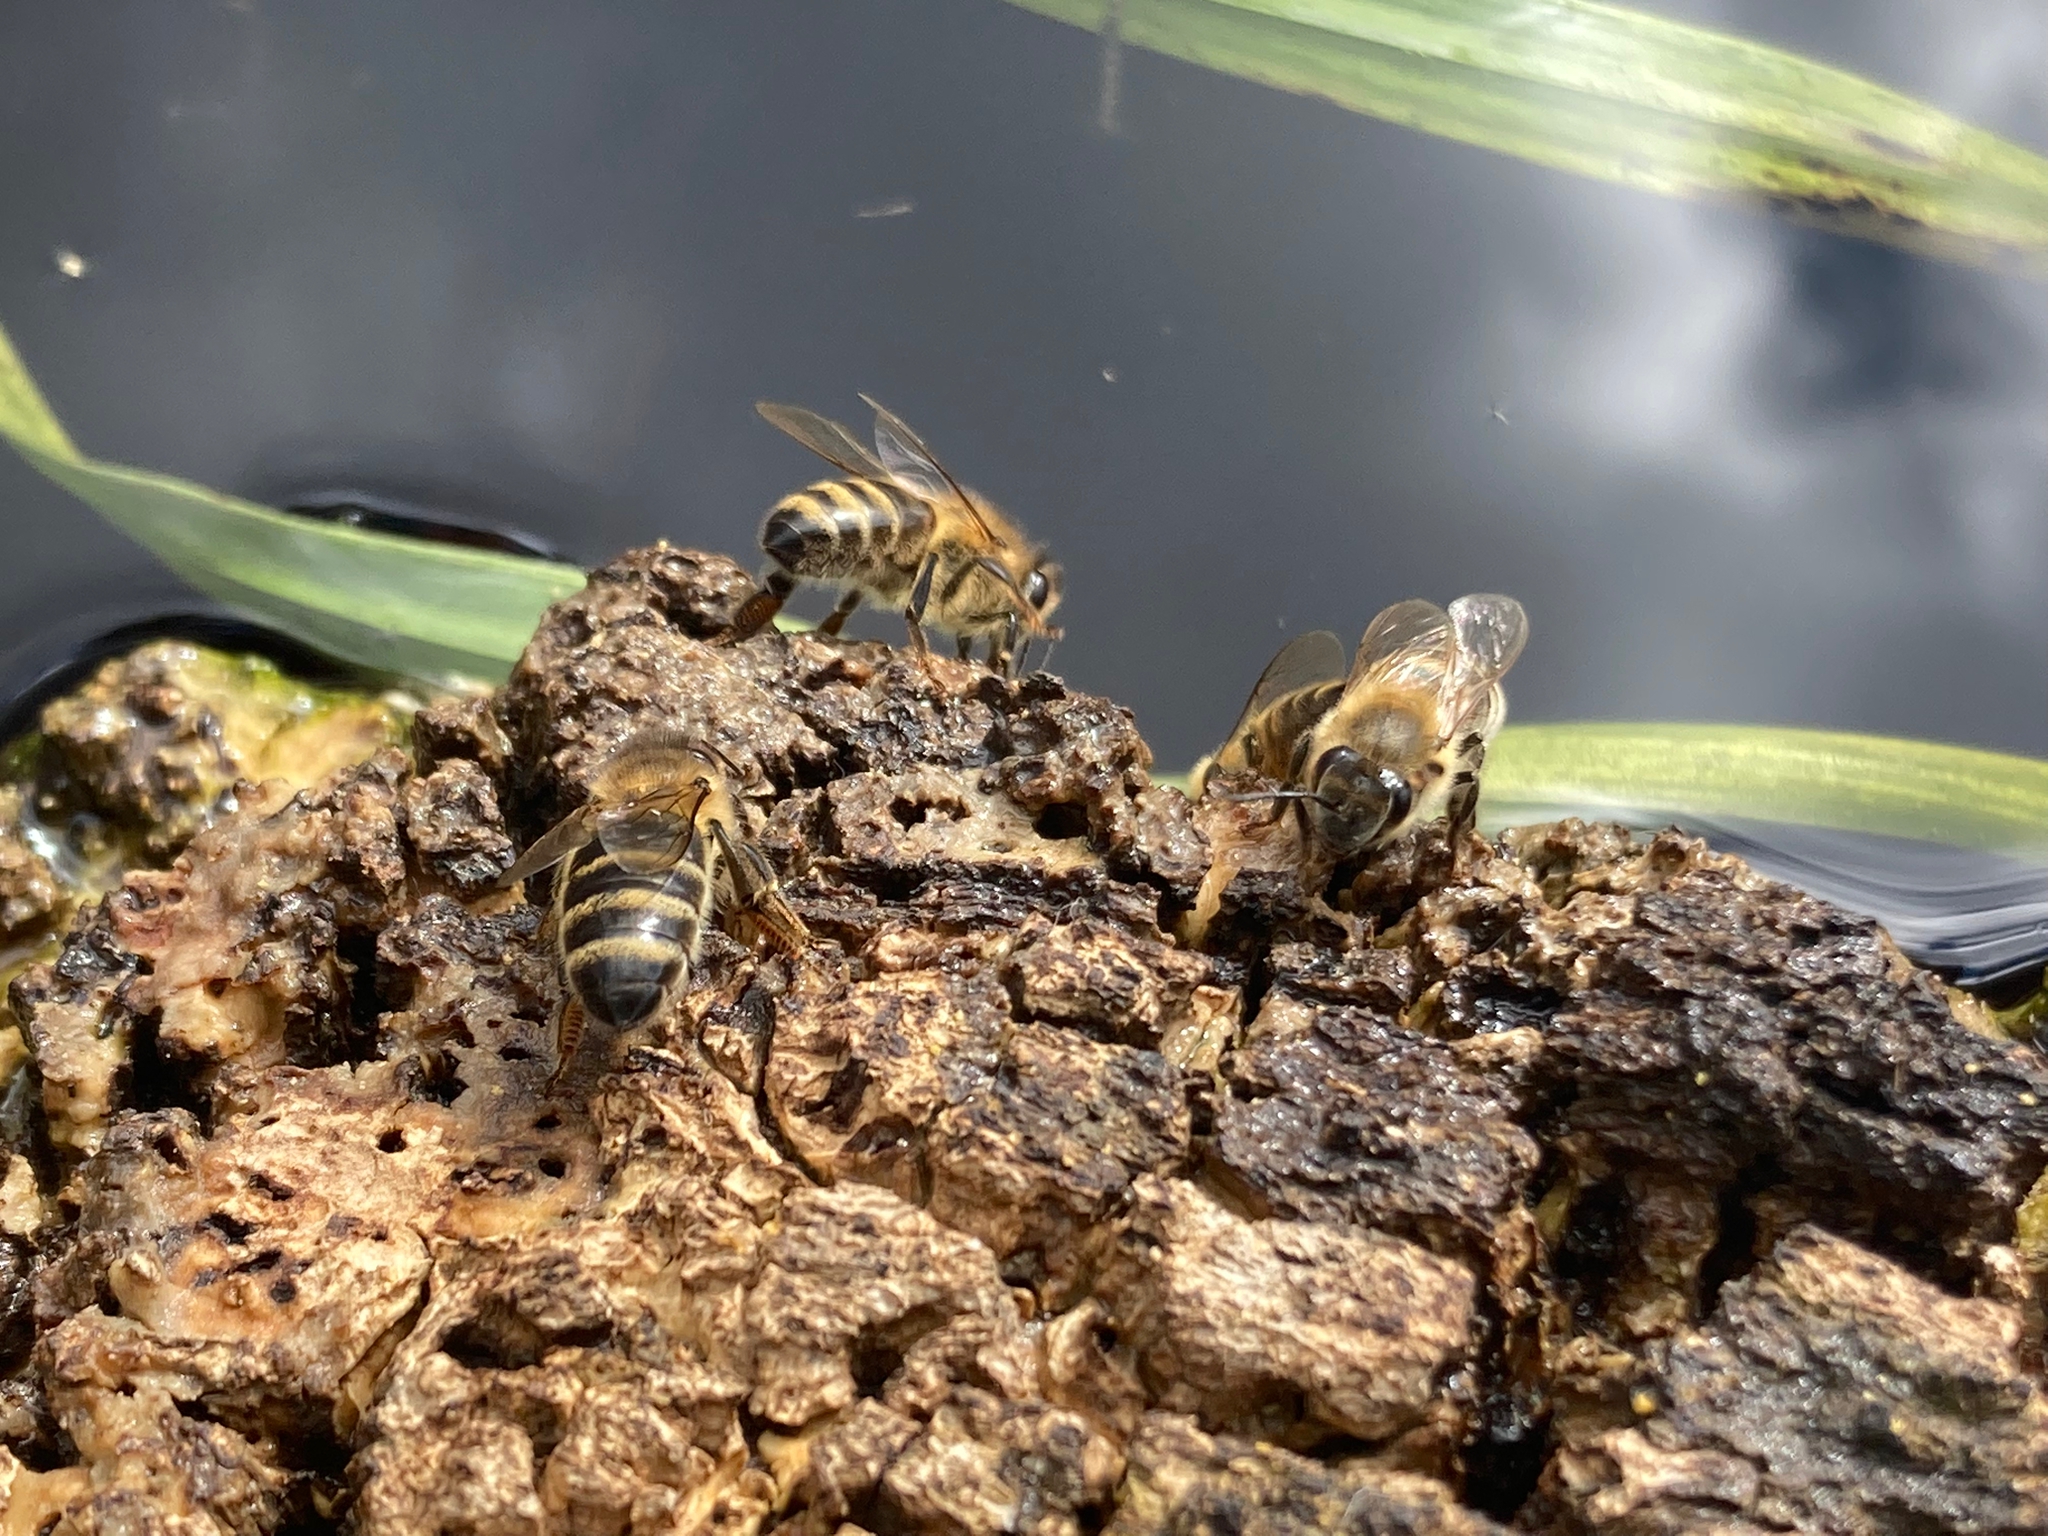 Des abeilles s'abreuvent sur un morceau de liège